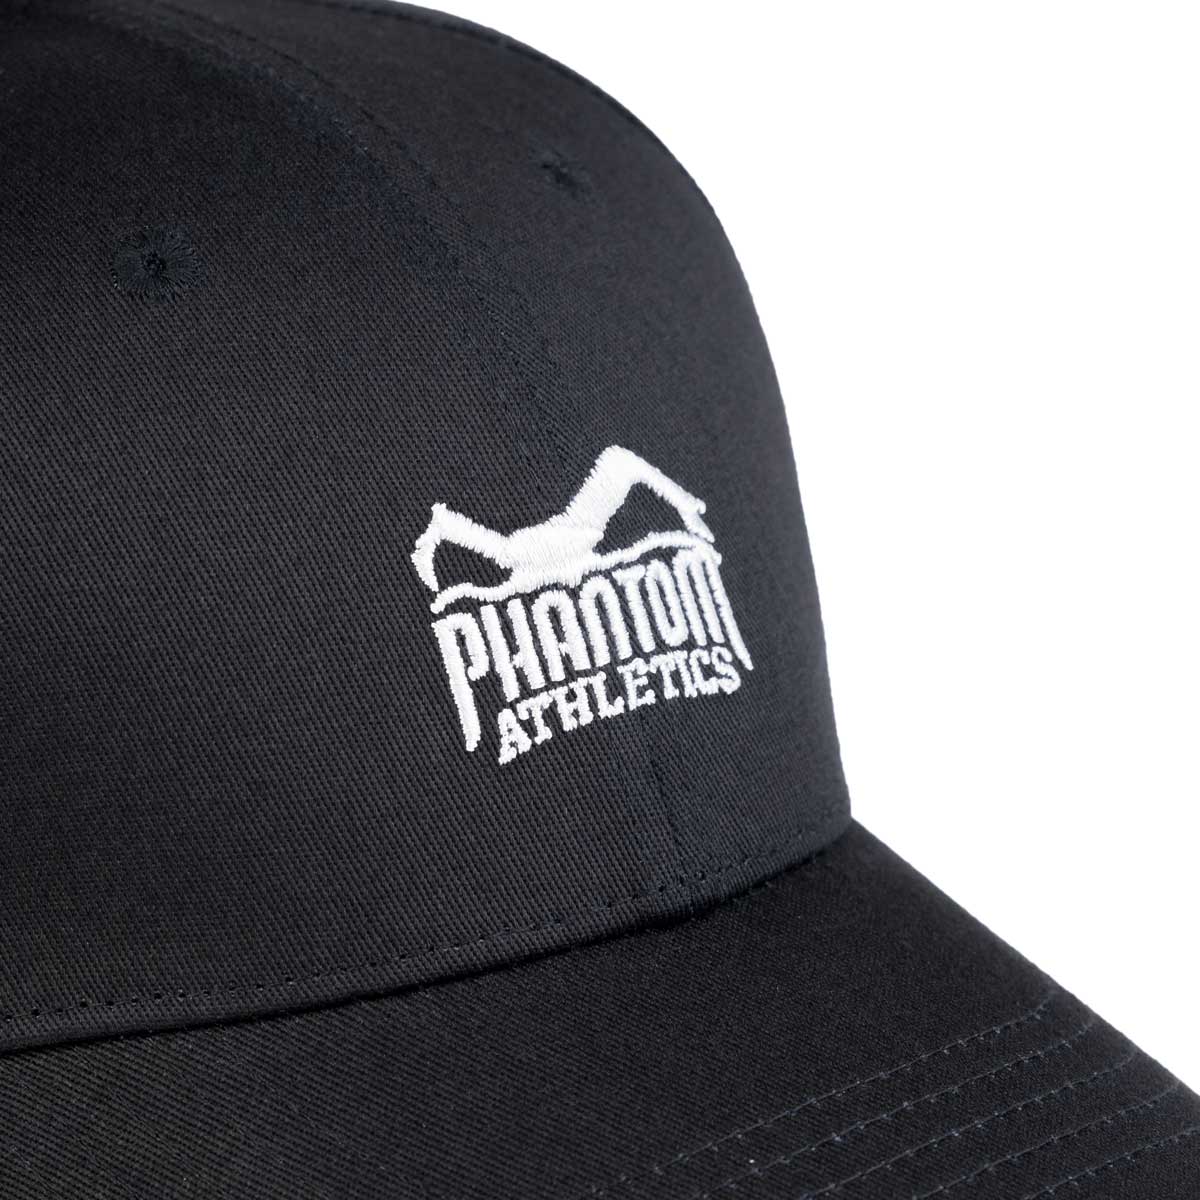 Phantom Cap für Kampfsportler. 6-Panel Cap in Schwarz mit gebogenem Schirm und hochwertig gesticktem Phantom Athletics Logo. Ideal für alle MMA Kämpfer, Boxer, BJJ Kämpfer, Thaiboxer oder Kickboxer.